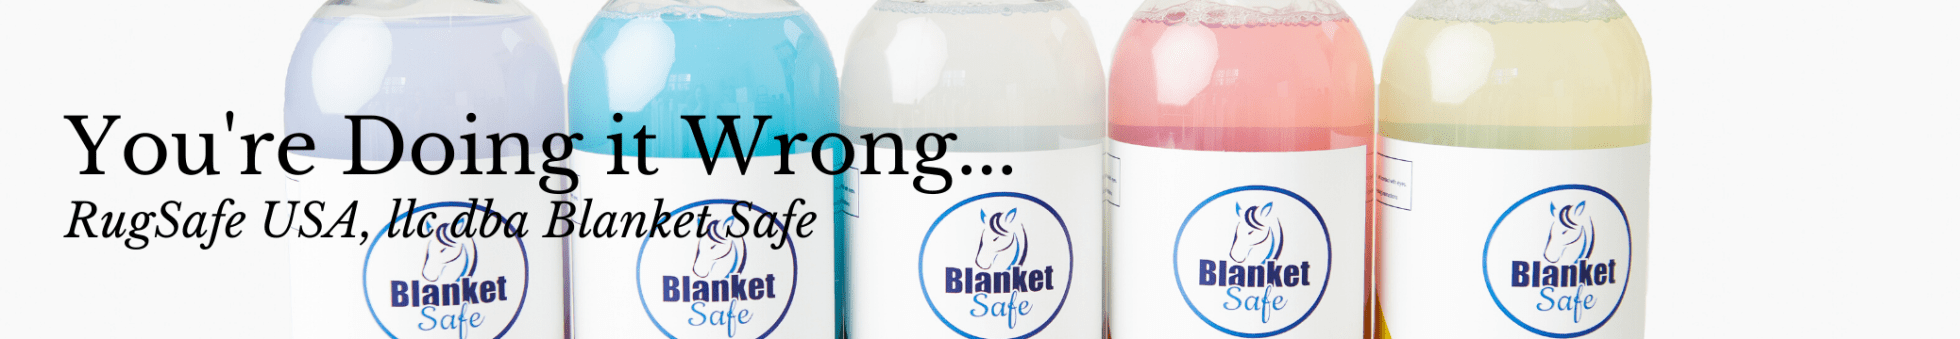 Blanket Safe Before and After. Horse Blanket. Baker Blanket. Horse blanket safe laundry soaps. Detergent Free. Animal Safe.